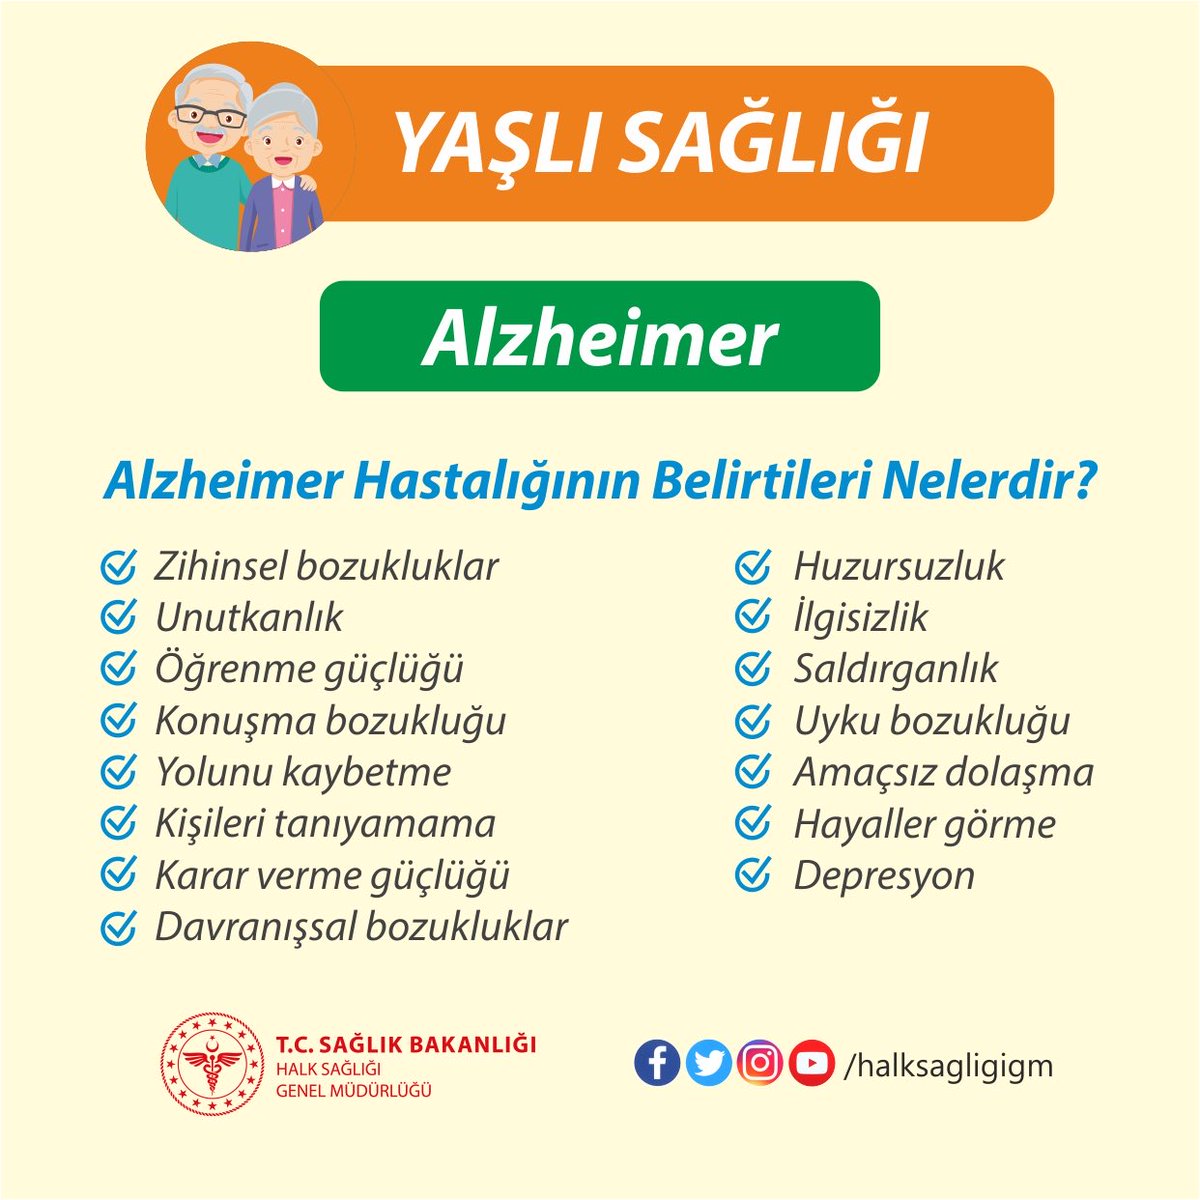 Alzheimer hastalığının ilk belirtisi genellikle unutkanlıktır.
#YaşlıSağlığı
#Alzheimer

@saglikbakanligi @halksagligigm @GaziantepISM